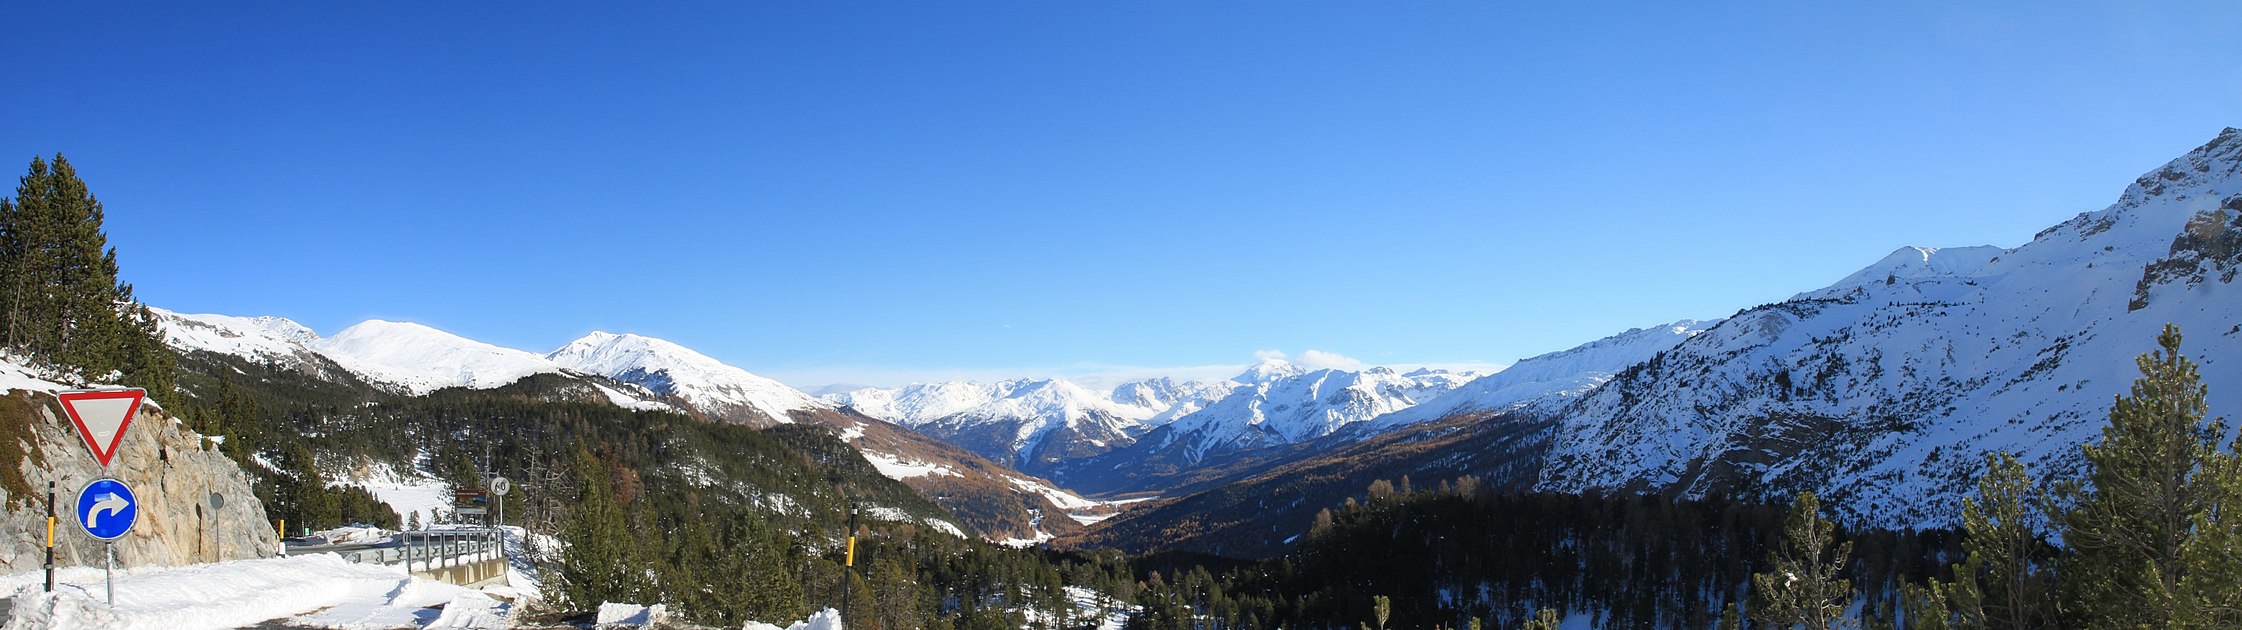 Blick von der Ofenpasshöhe auf die Ortlergruppe im Südtirol.